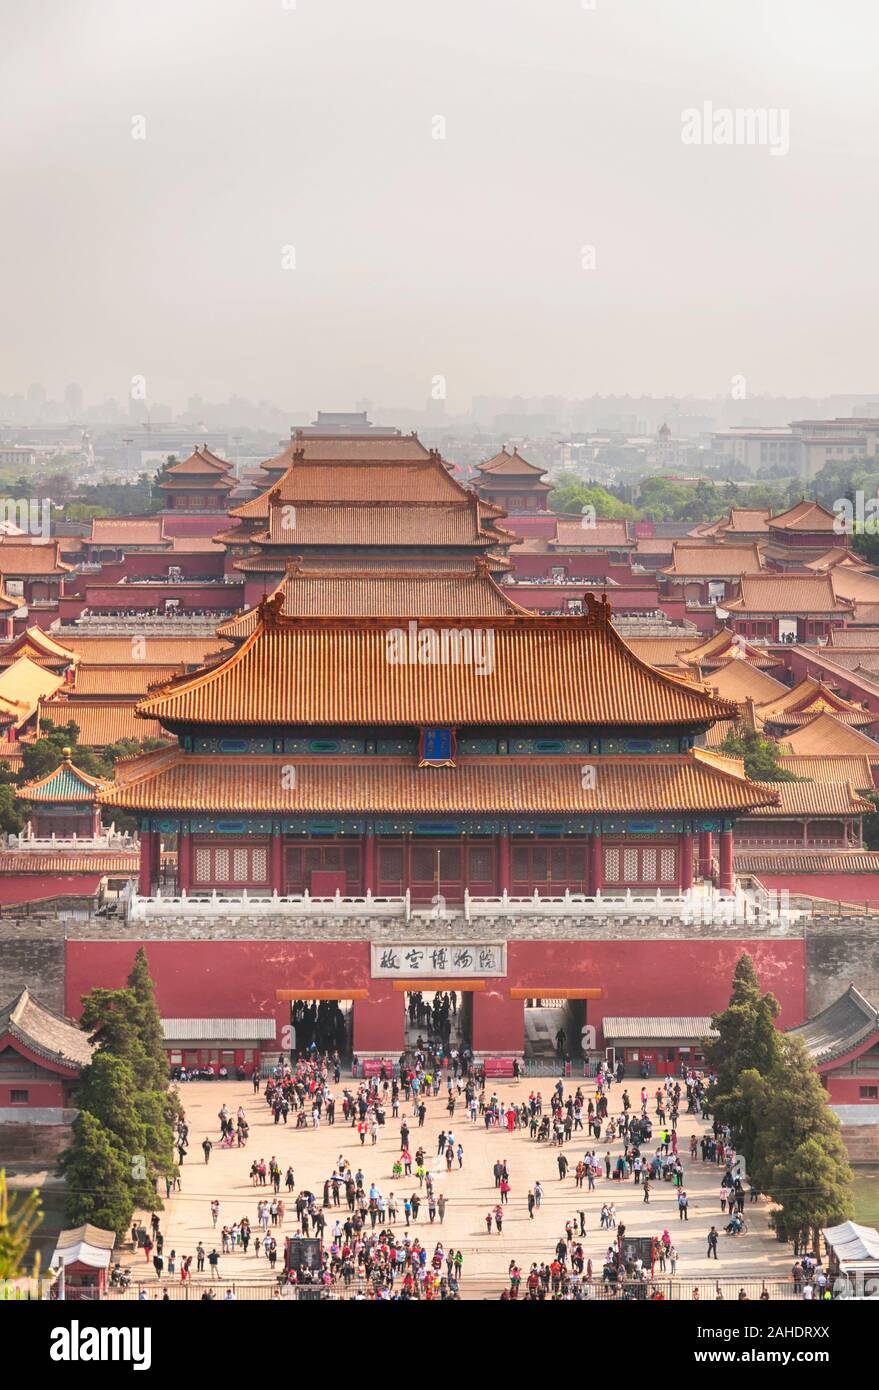 Pechino, Cina. Aprile 26, 2016. Una veduta aerea di molti edifici entro la Città Proibita di Pechino Cina come visto dal Parco Jingshan. Foto Stock